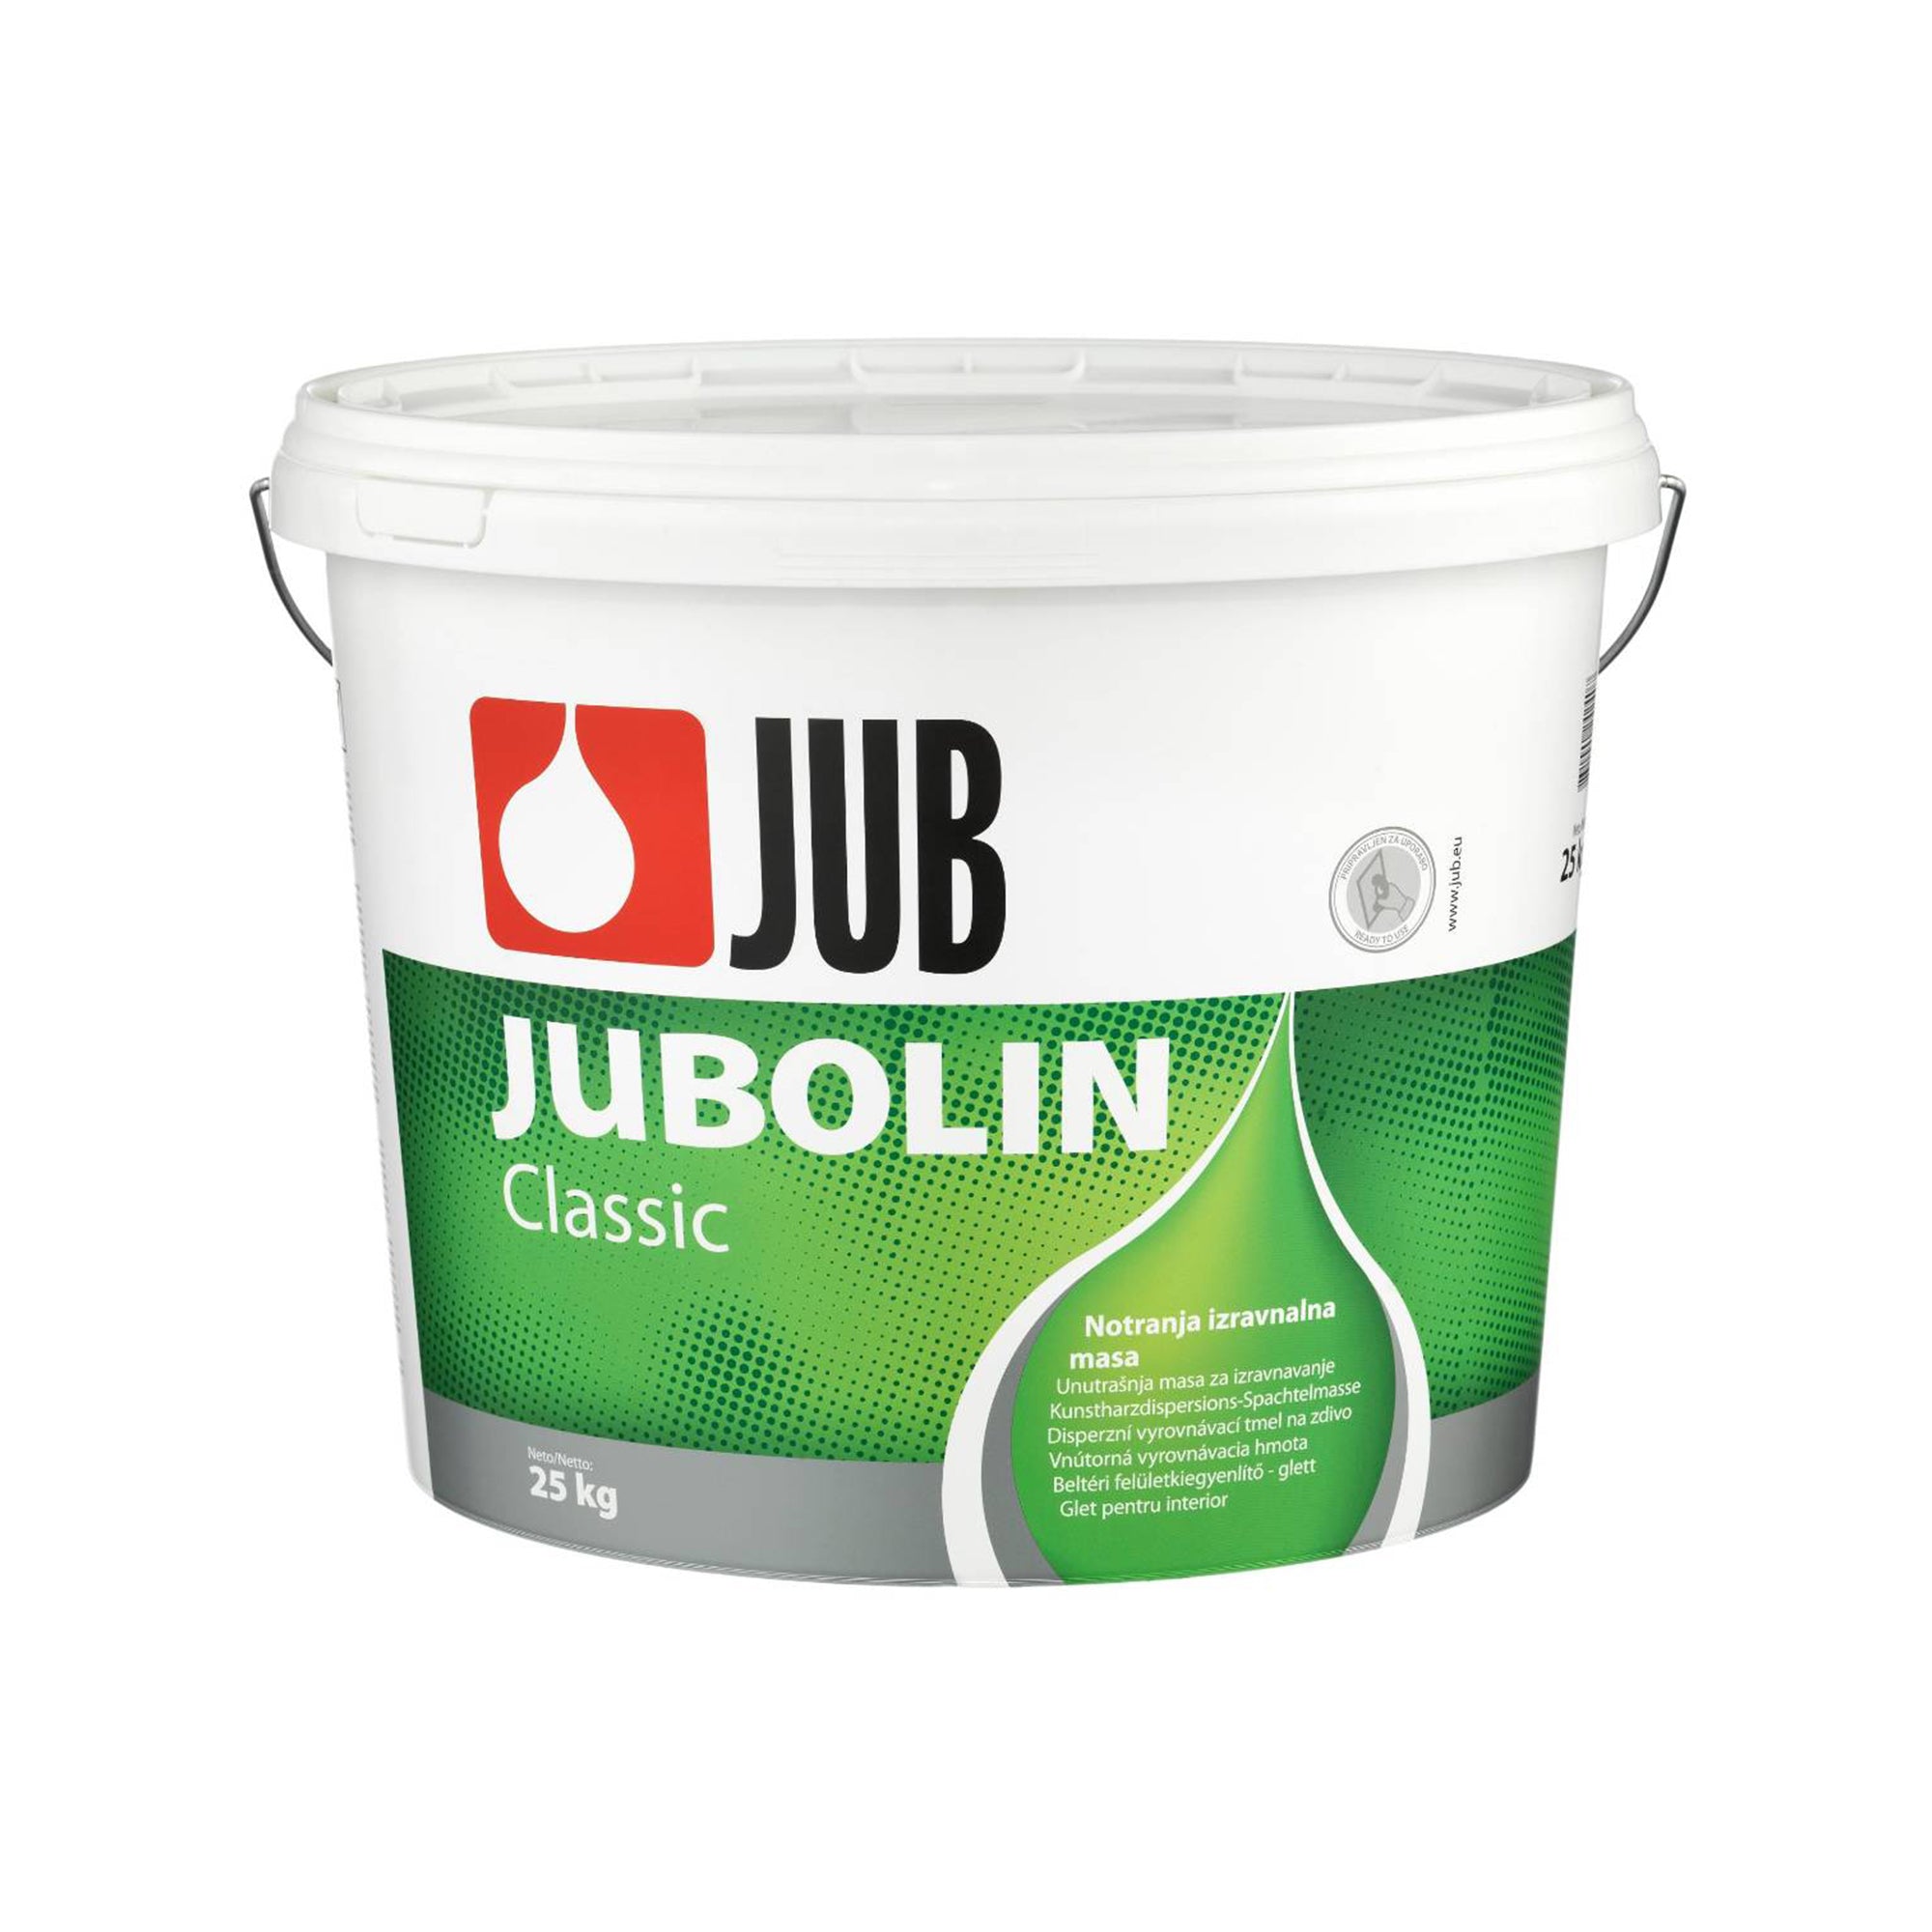 JUB JUBOLIN Classic vnútorná vyrovnávacia hmota 25 kg